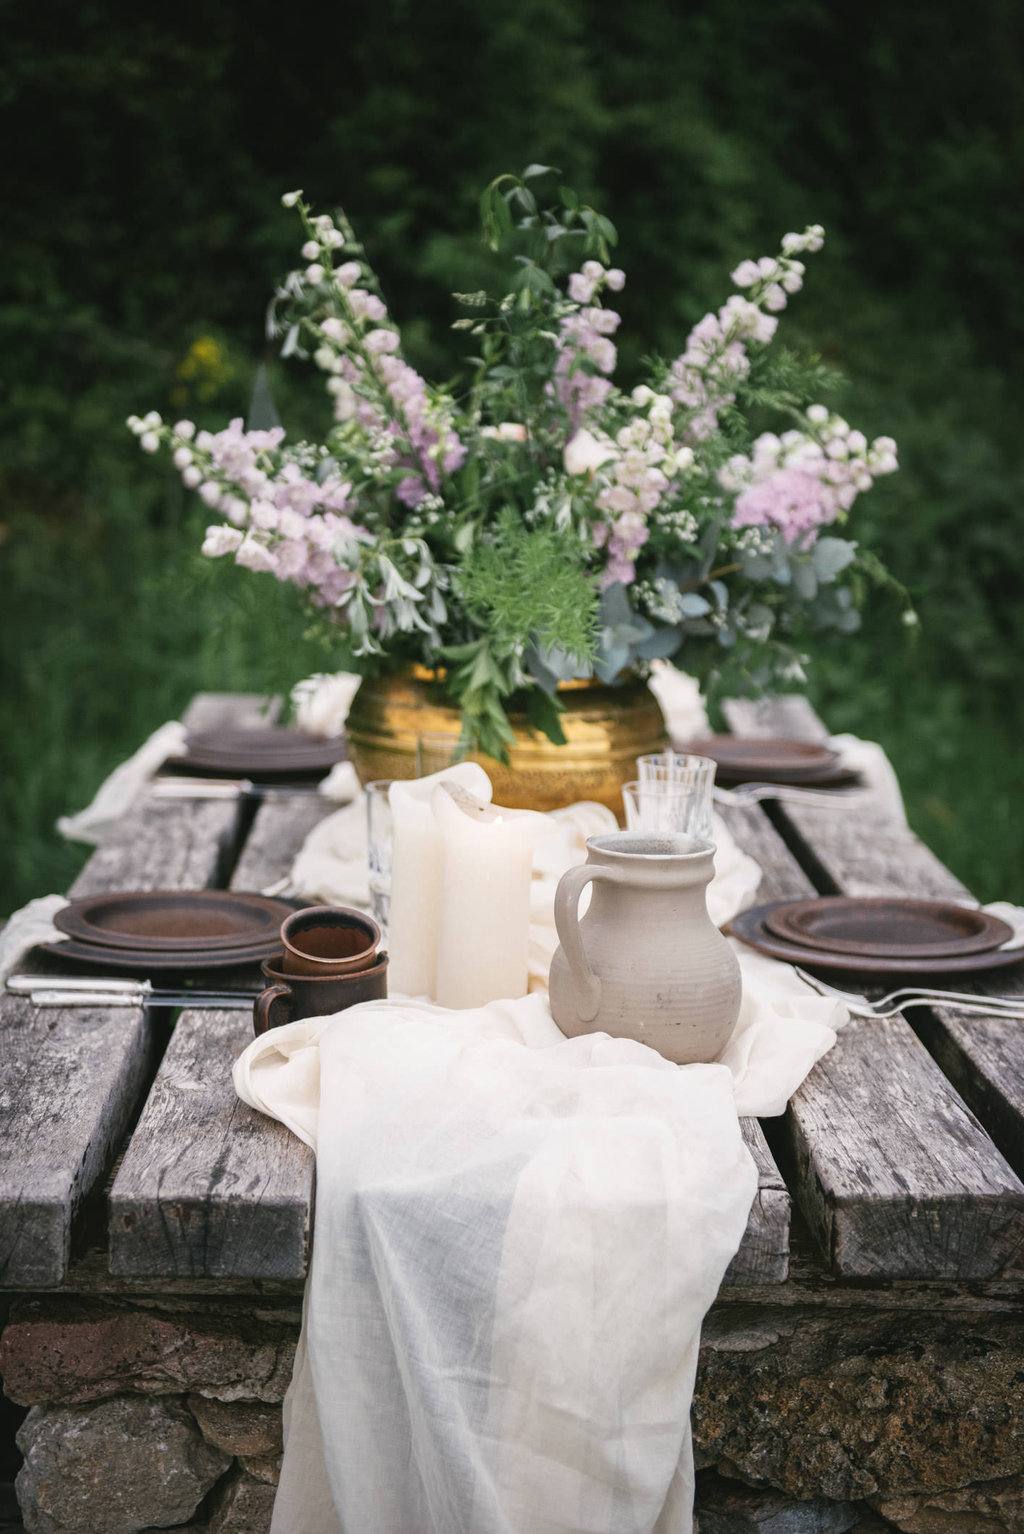 Centre de table by Lilas Wood, designer floral mariage près de Lyon - Photographe : Zéphyr et Luna